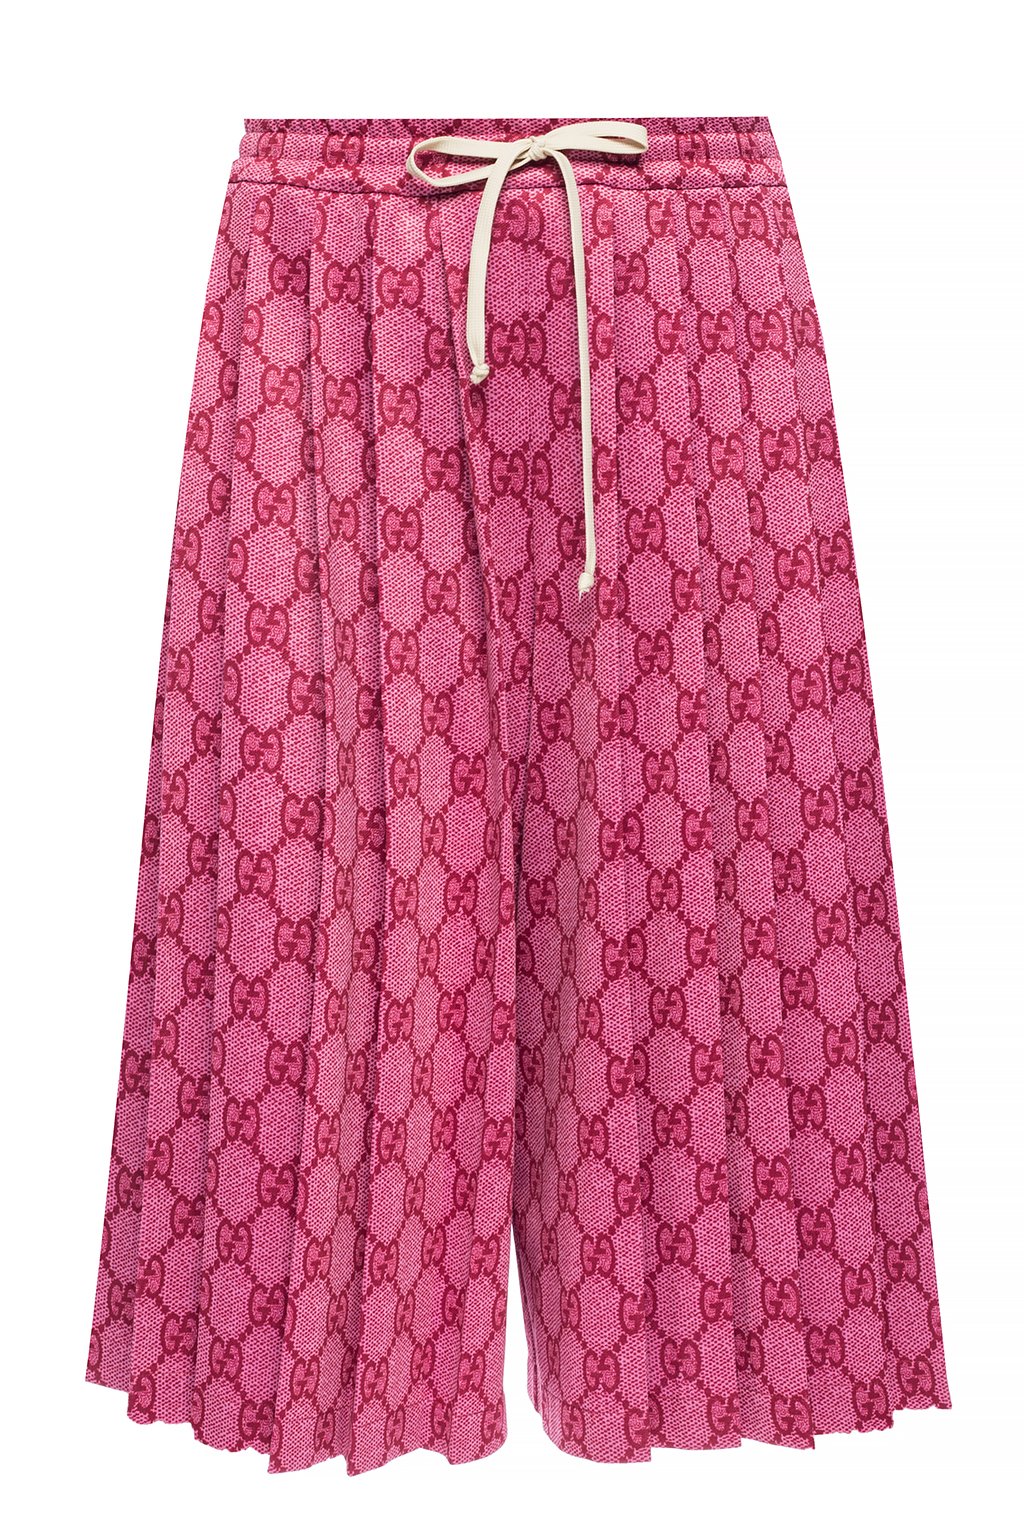 pink gucci shorts